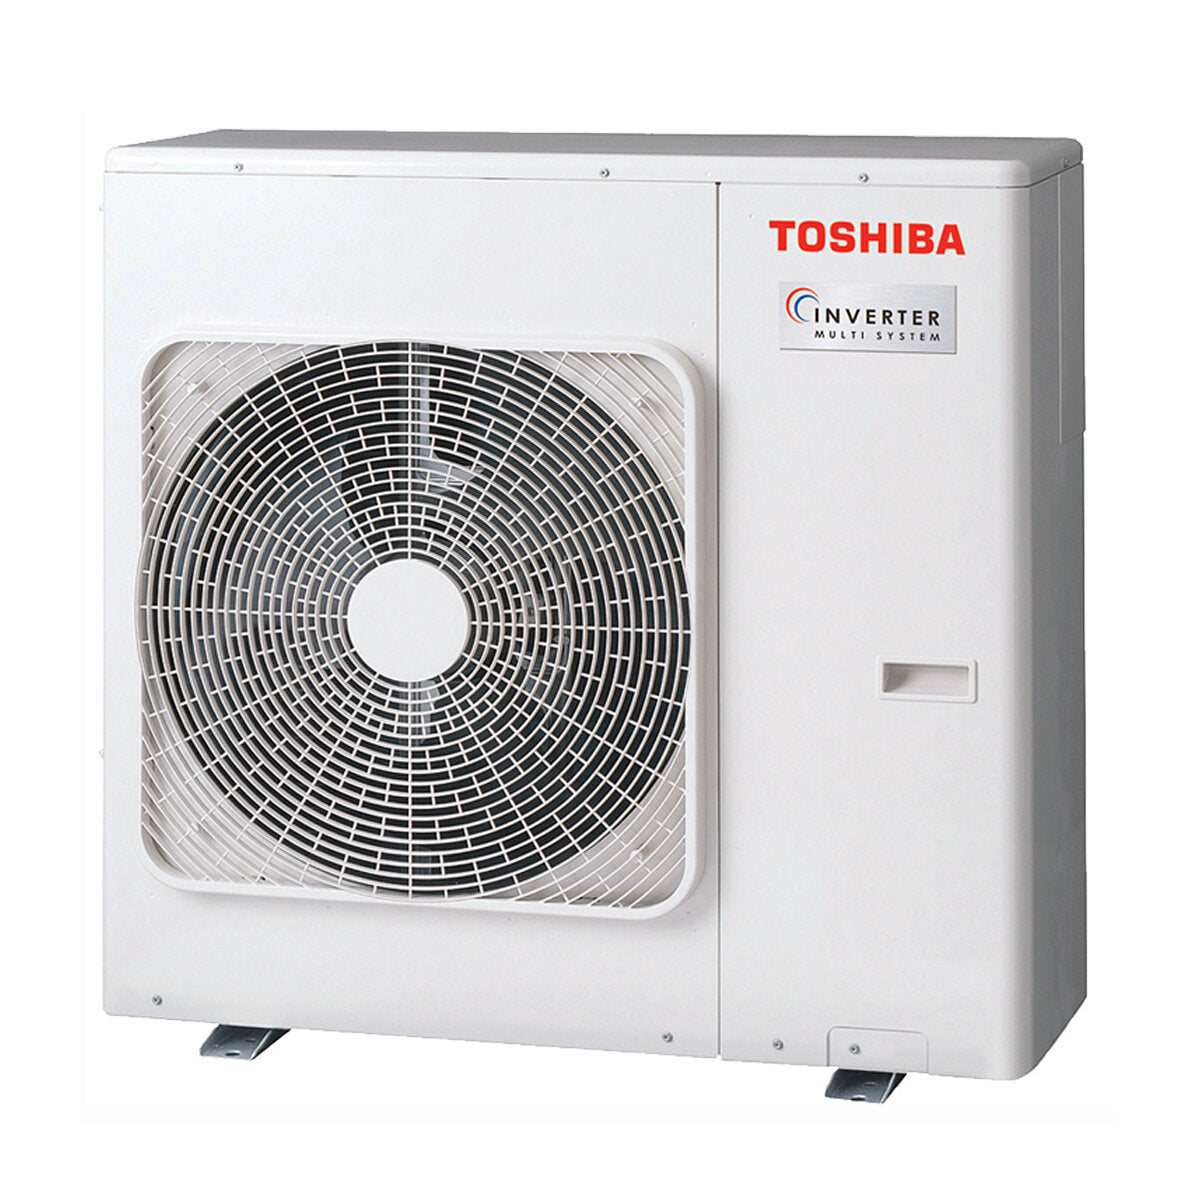 Toshiba Ductable Air Conditioner U2 penta split 9000 + 9000 + 12000 + 12000 + 12000 BTU inverter A++ unité extérieure 10,0 kW